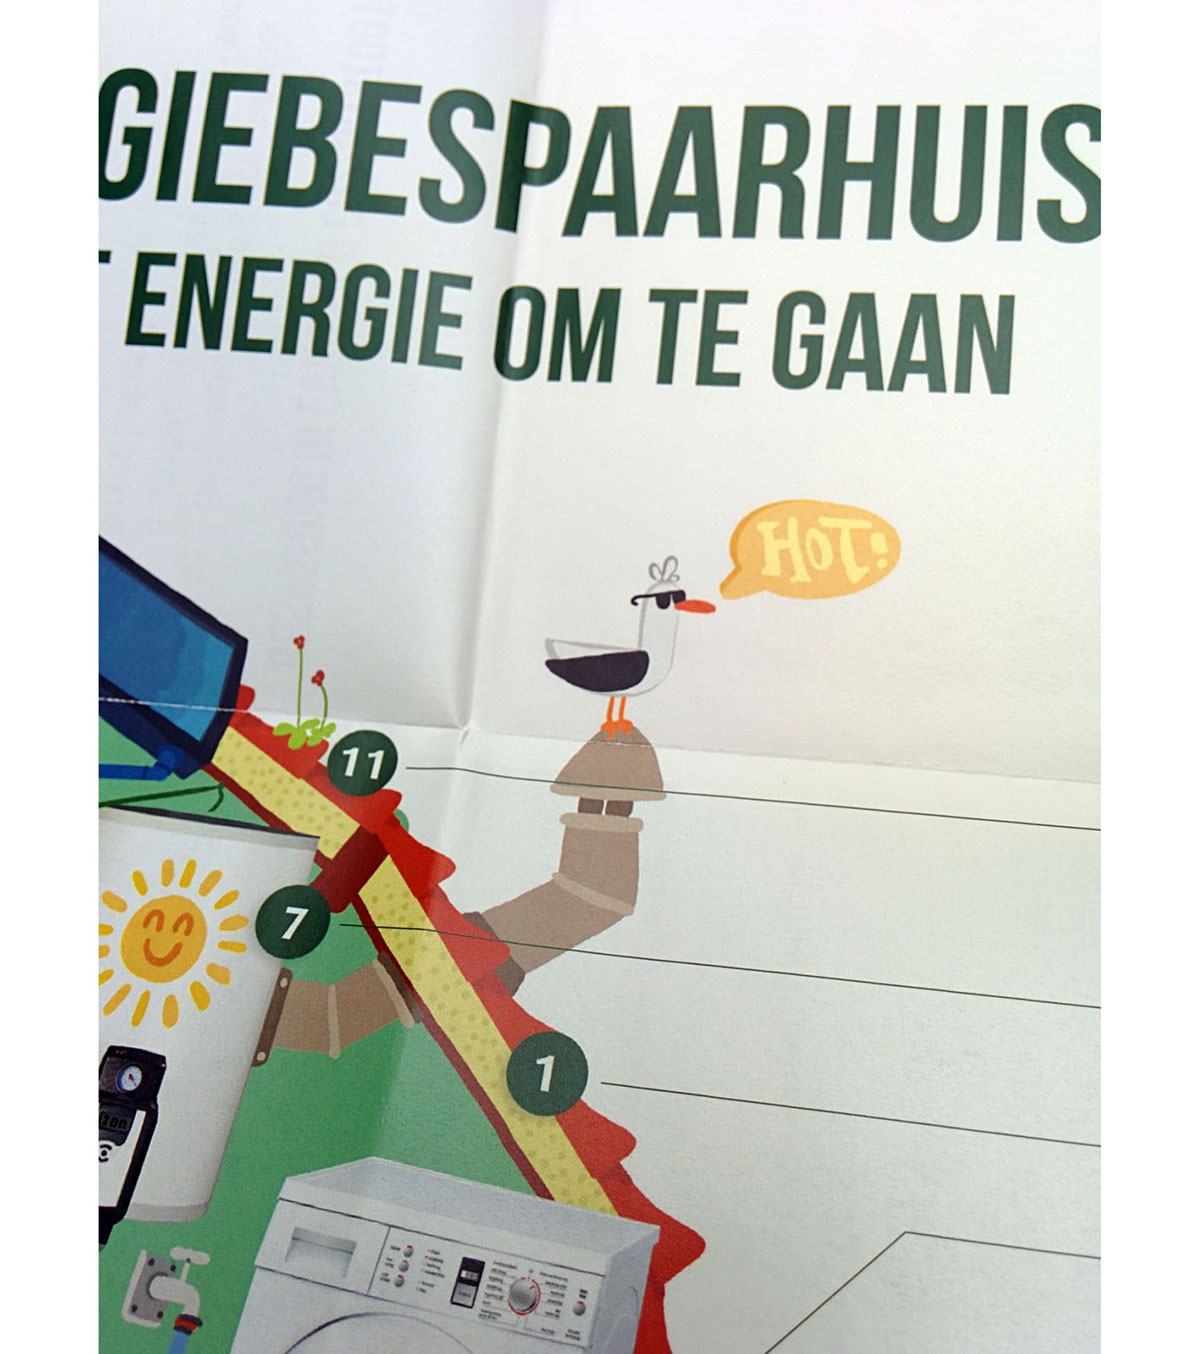 greenchoice green energy save house besparen Rotterdam Michiel moormann illustratie animatie giff energie duurzaam Sustainability